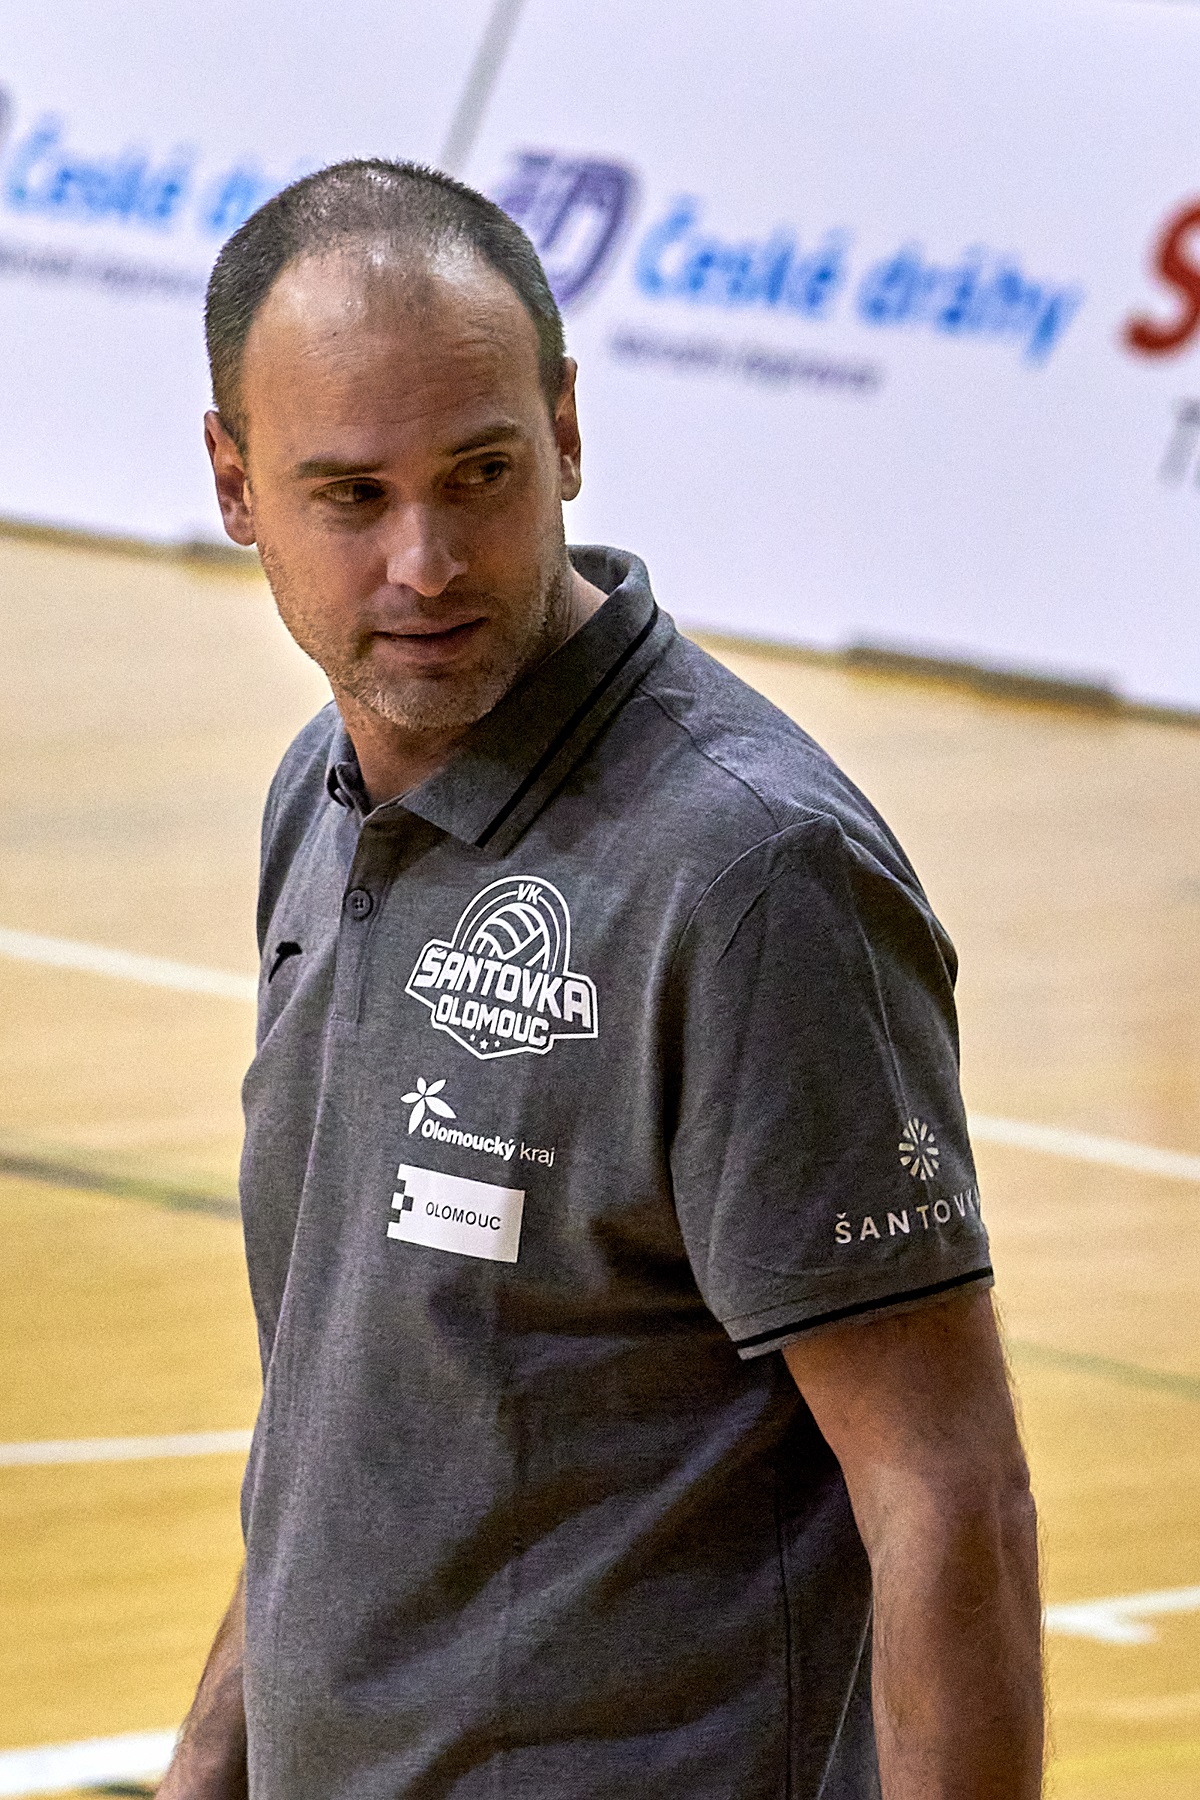 Od zahraničních hráček jsme čekali více, říká trenér volejbalistek Olomouce Jan Drešl po sedmém místě v extralize